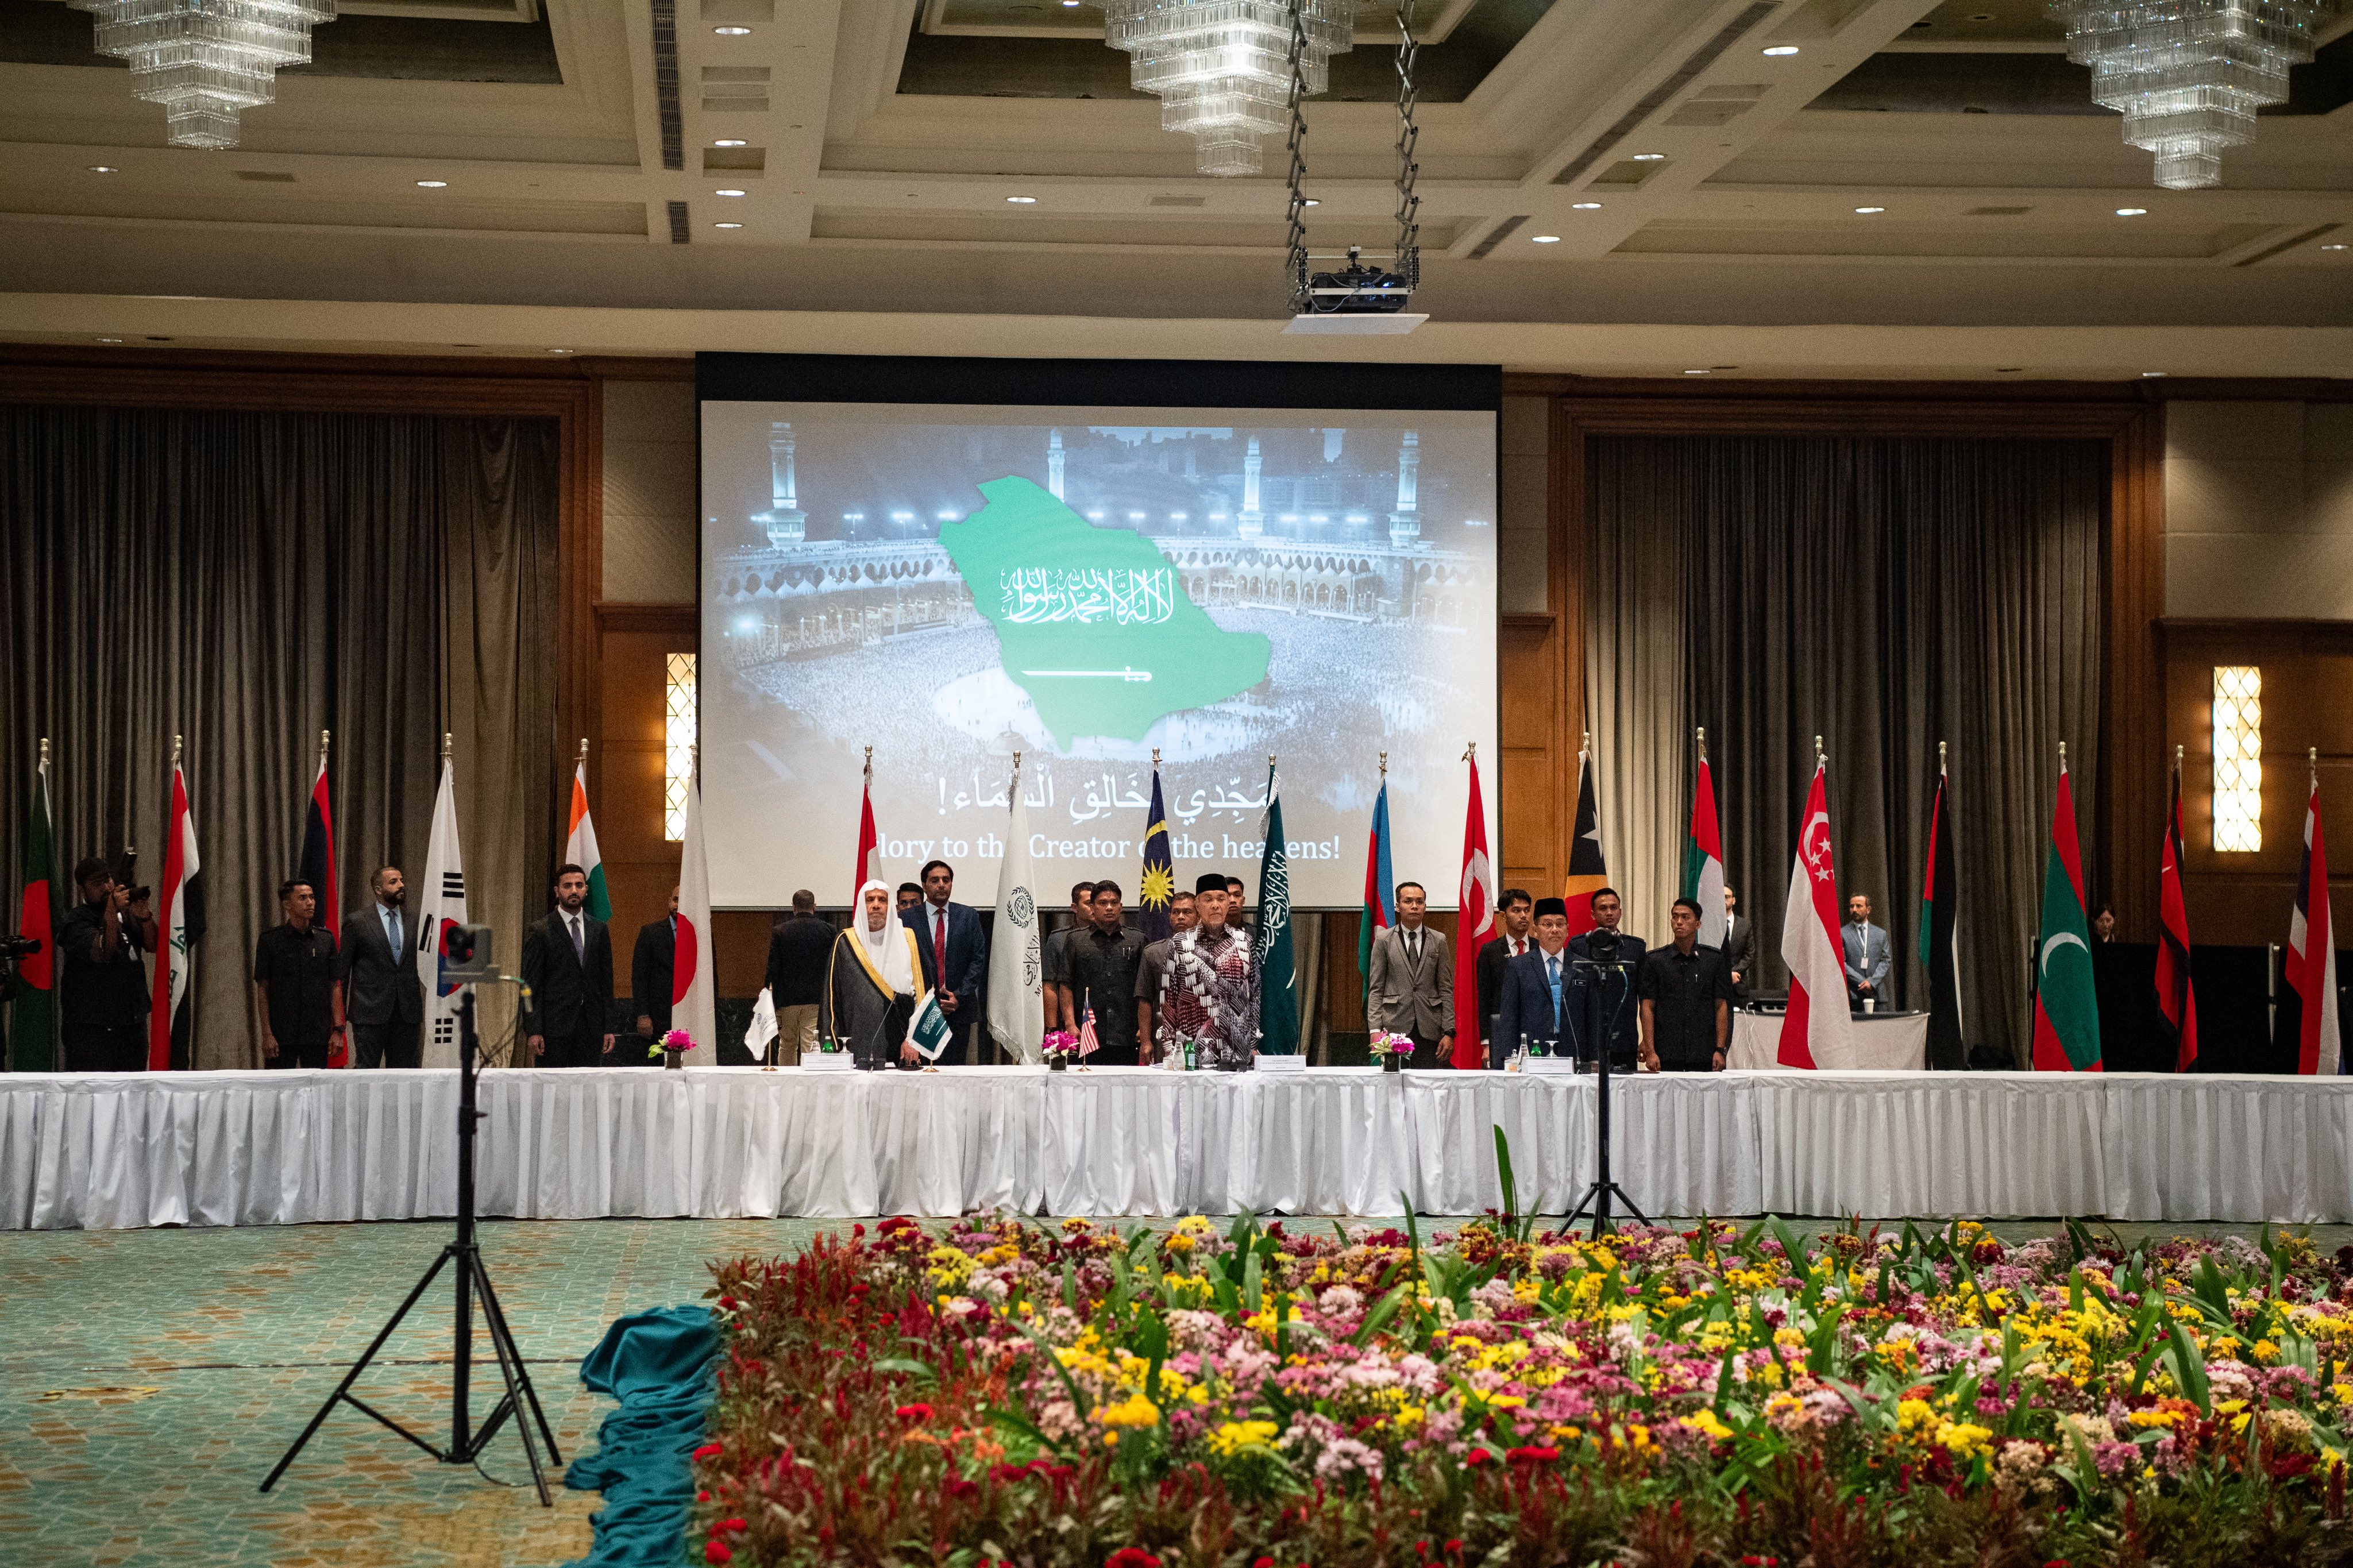 Yang Mulia Sekretaris Jenderal LMD, Syekh Dr. Mohammed Alissa, bersama Wakil Perdana Menteri Malaysia, telah meresmikan “Majelis Ulama ASEAN” di ibu kota, Kuala Lumpur.